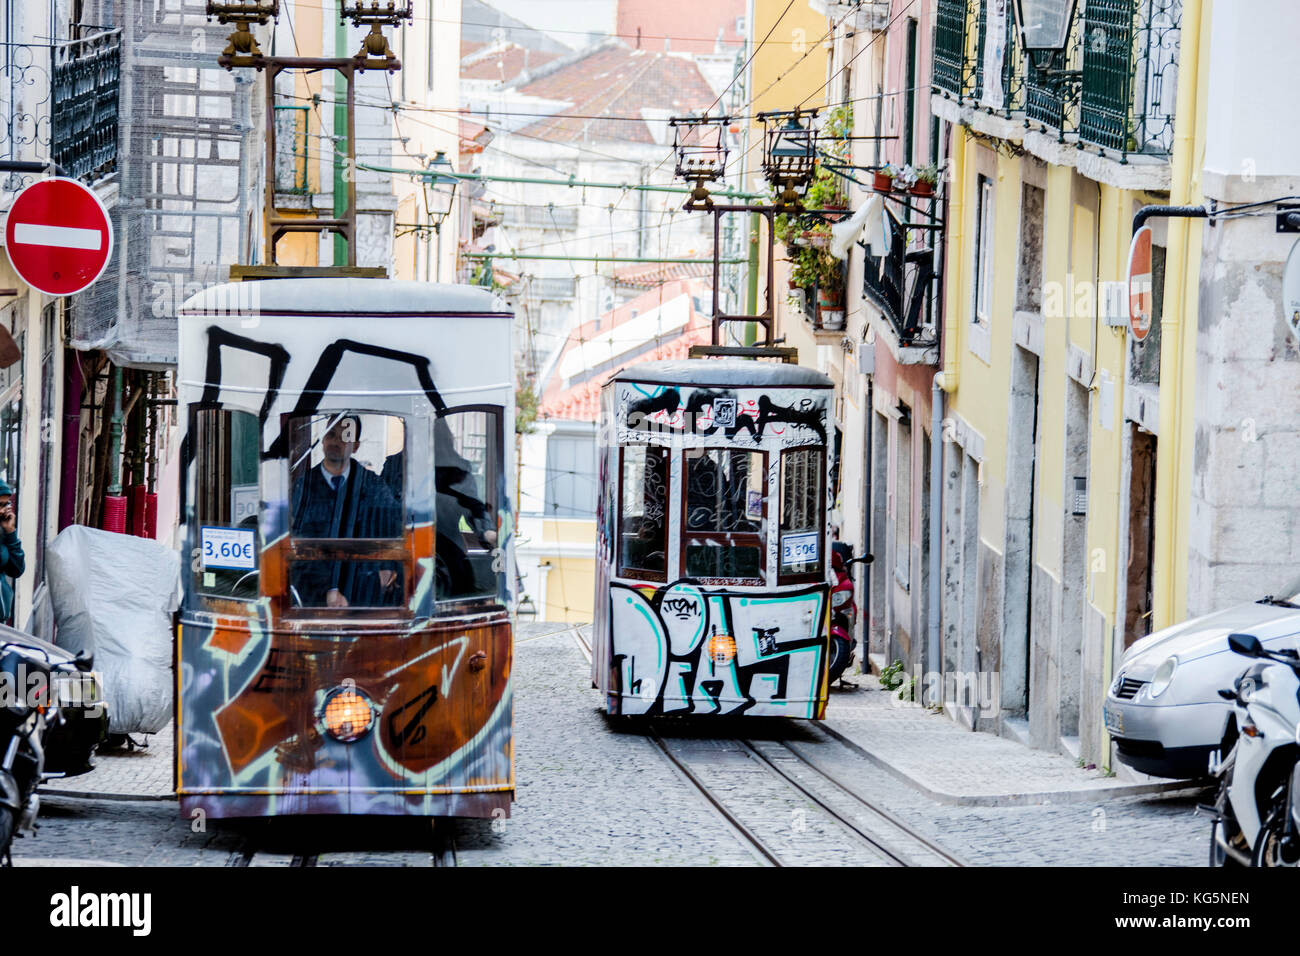 La caratteristica dei tram procedere verso il Bairro alto un quartiere centrale della città vecchia di Lisbona portogallo Europa Foto Stock